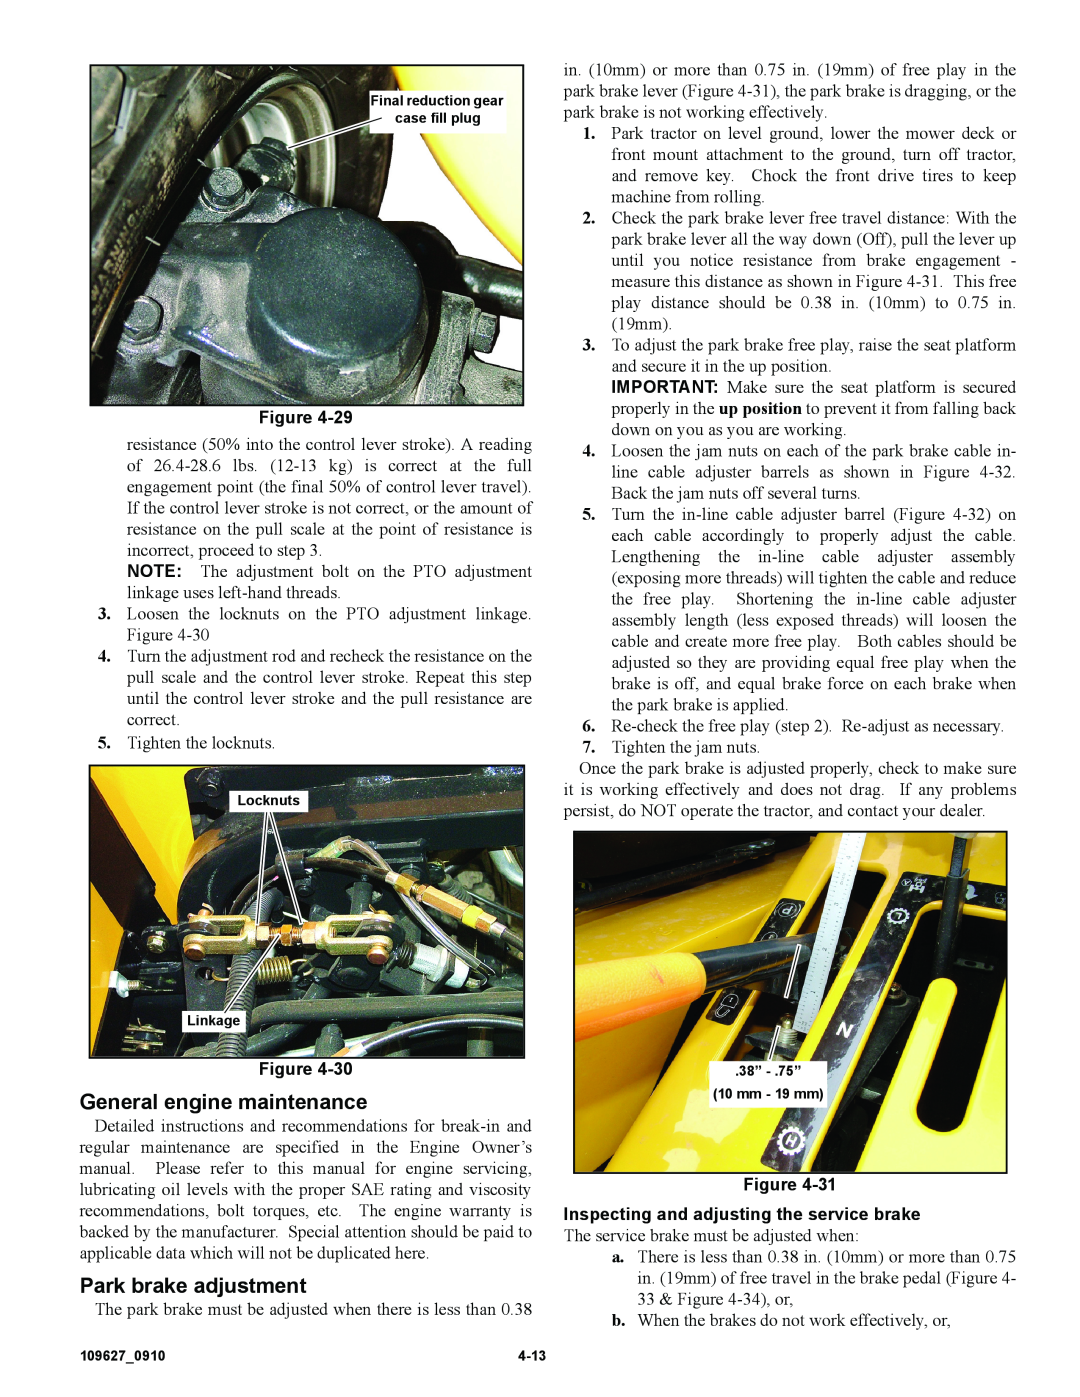 Hustler Turf 3700, 3500 owner manual General engine maintenance, Park brake adjustment 